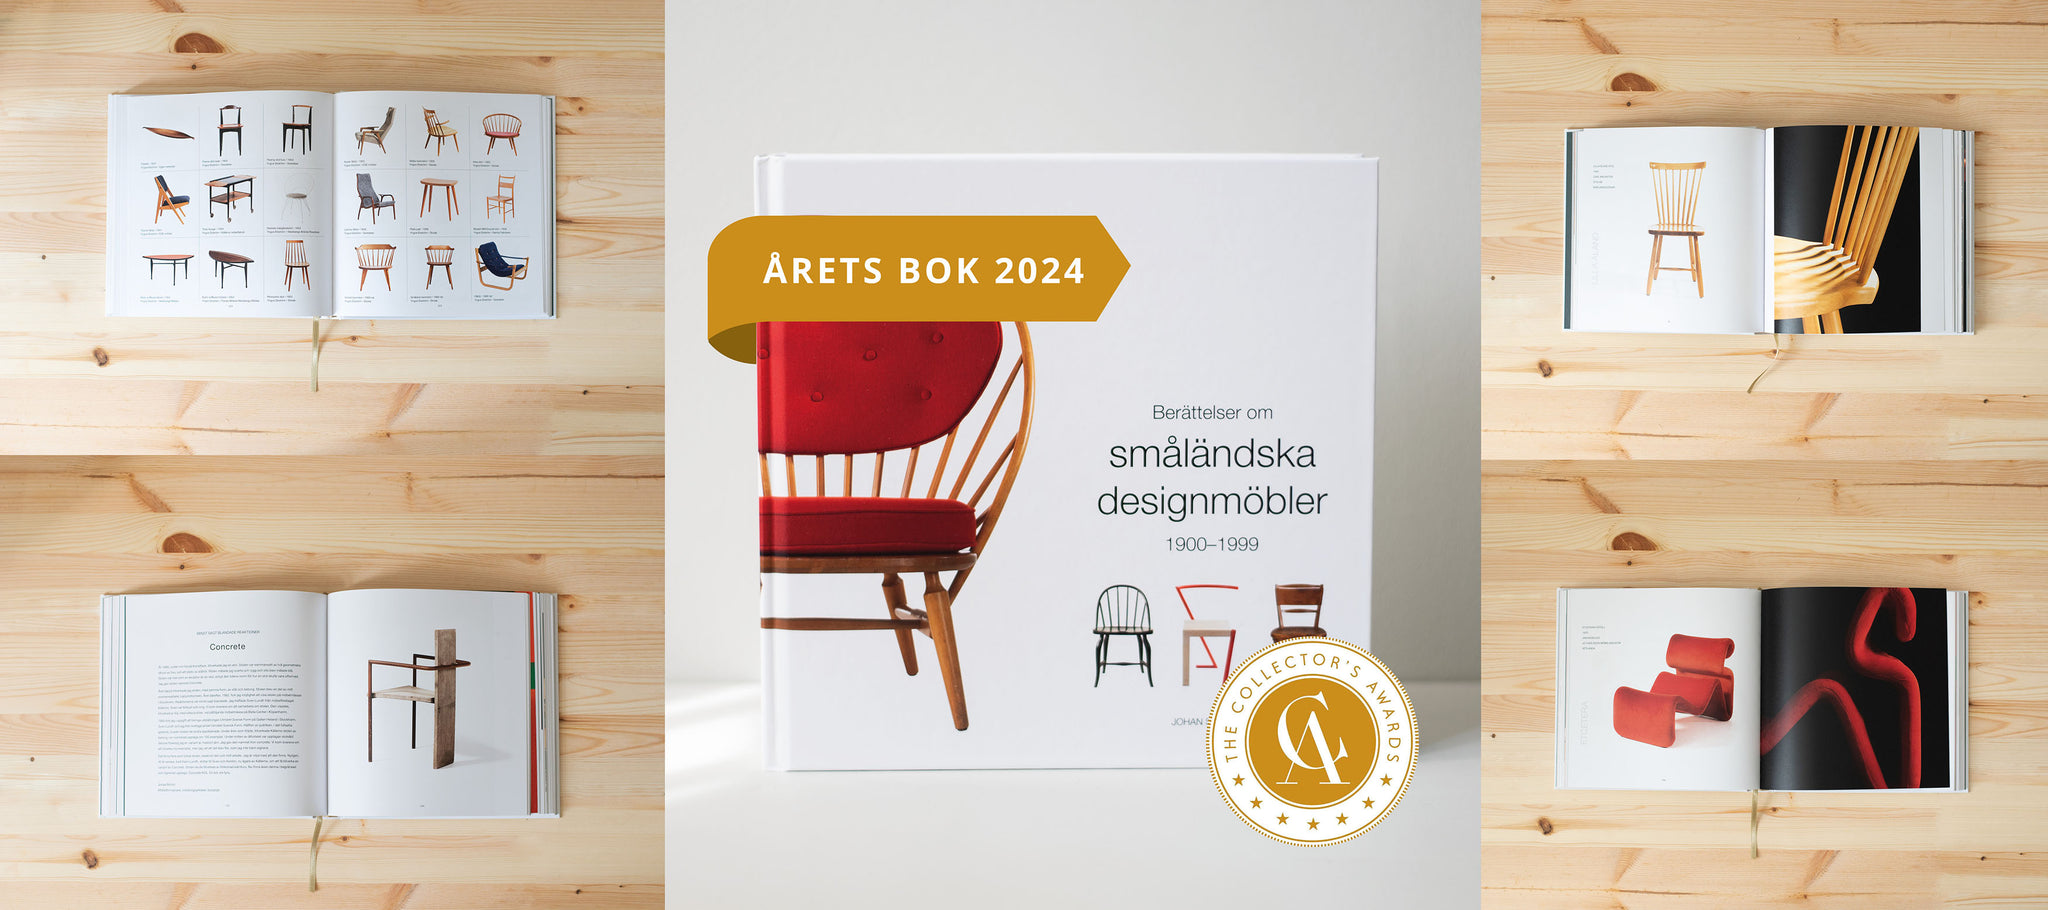 Berättelser om småländska designmöbler Årets bok 2024